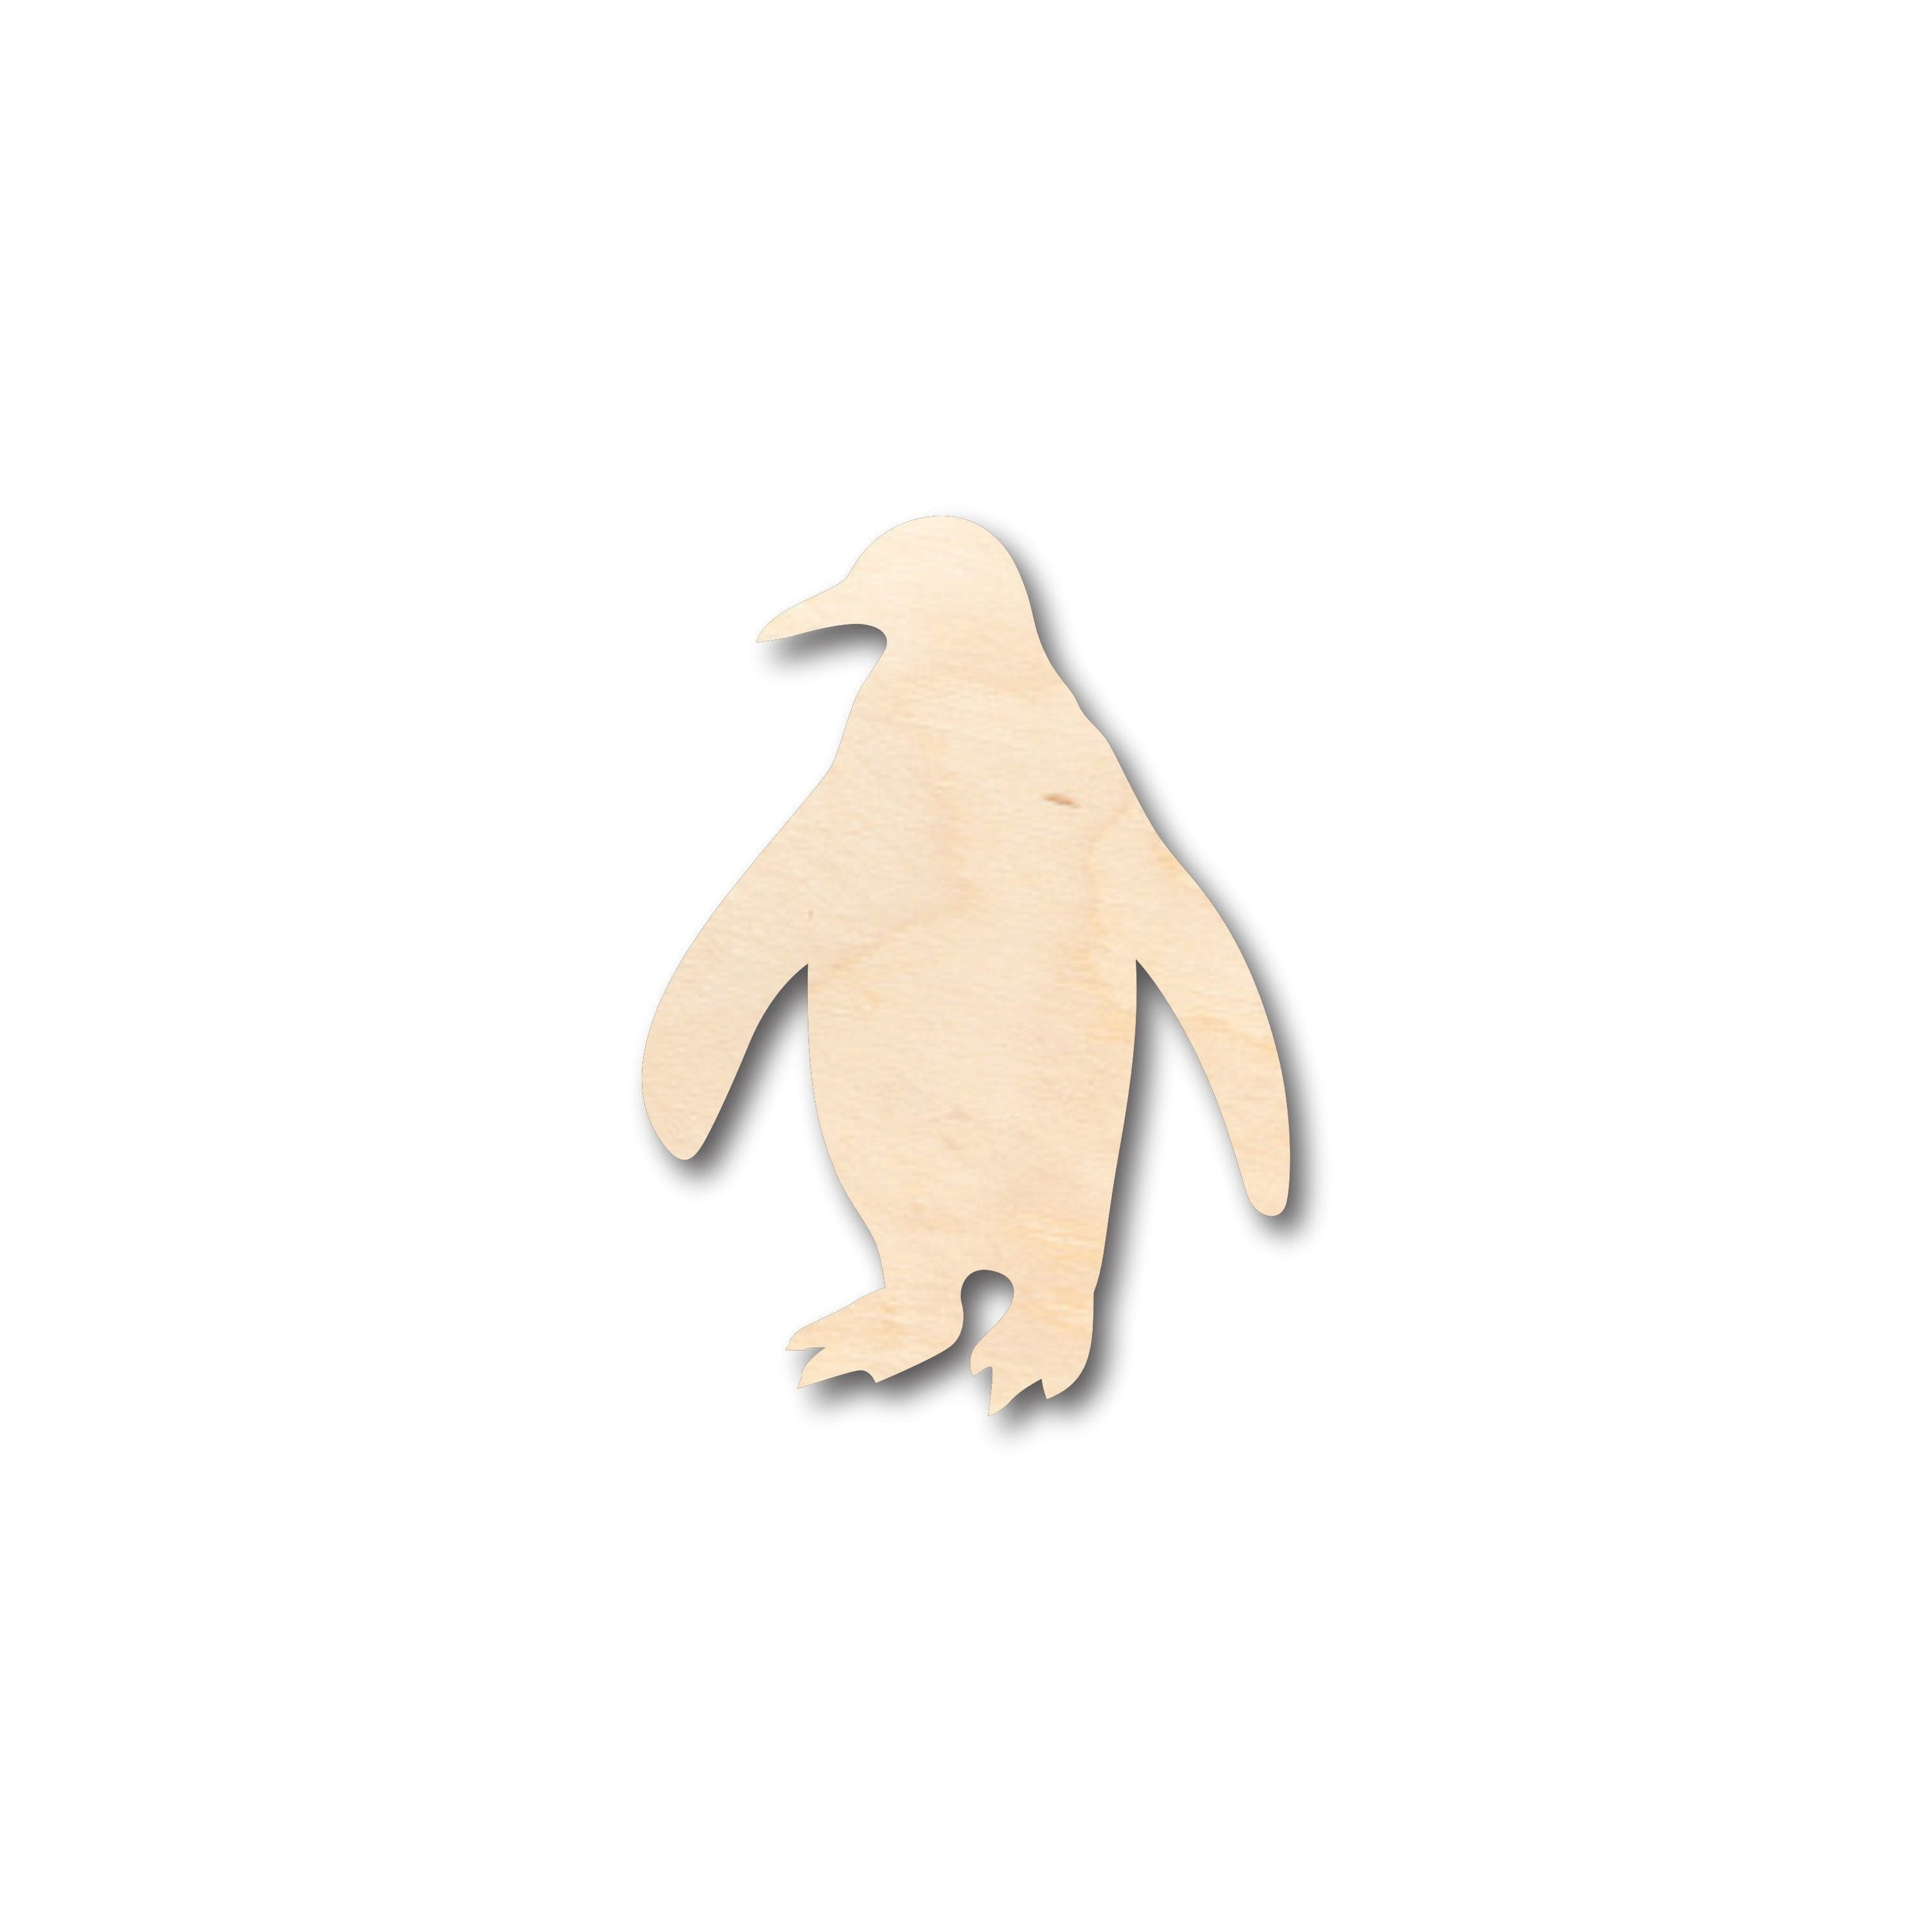 Unfinished Wood Penguin Shape - Craft - up to 36